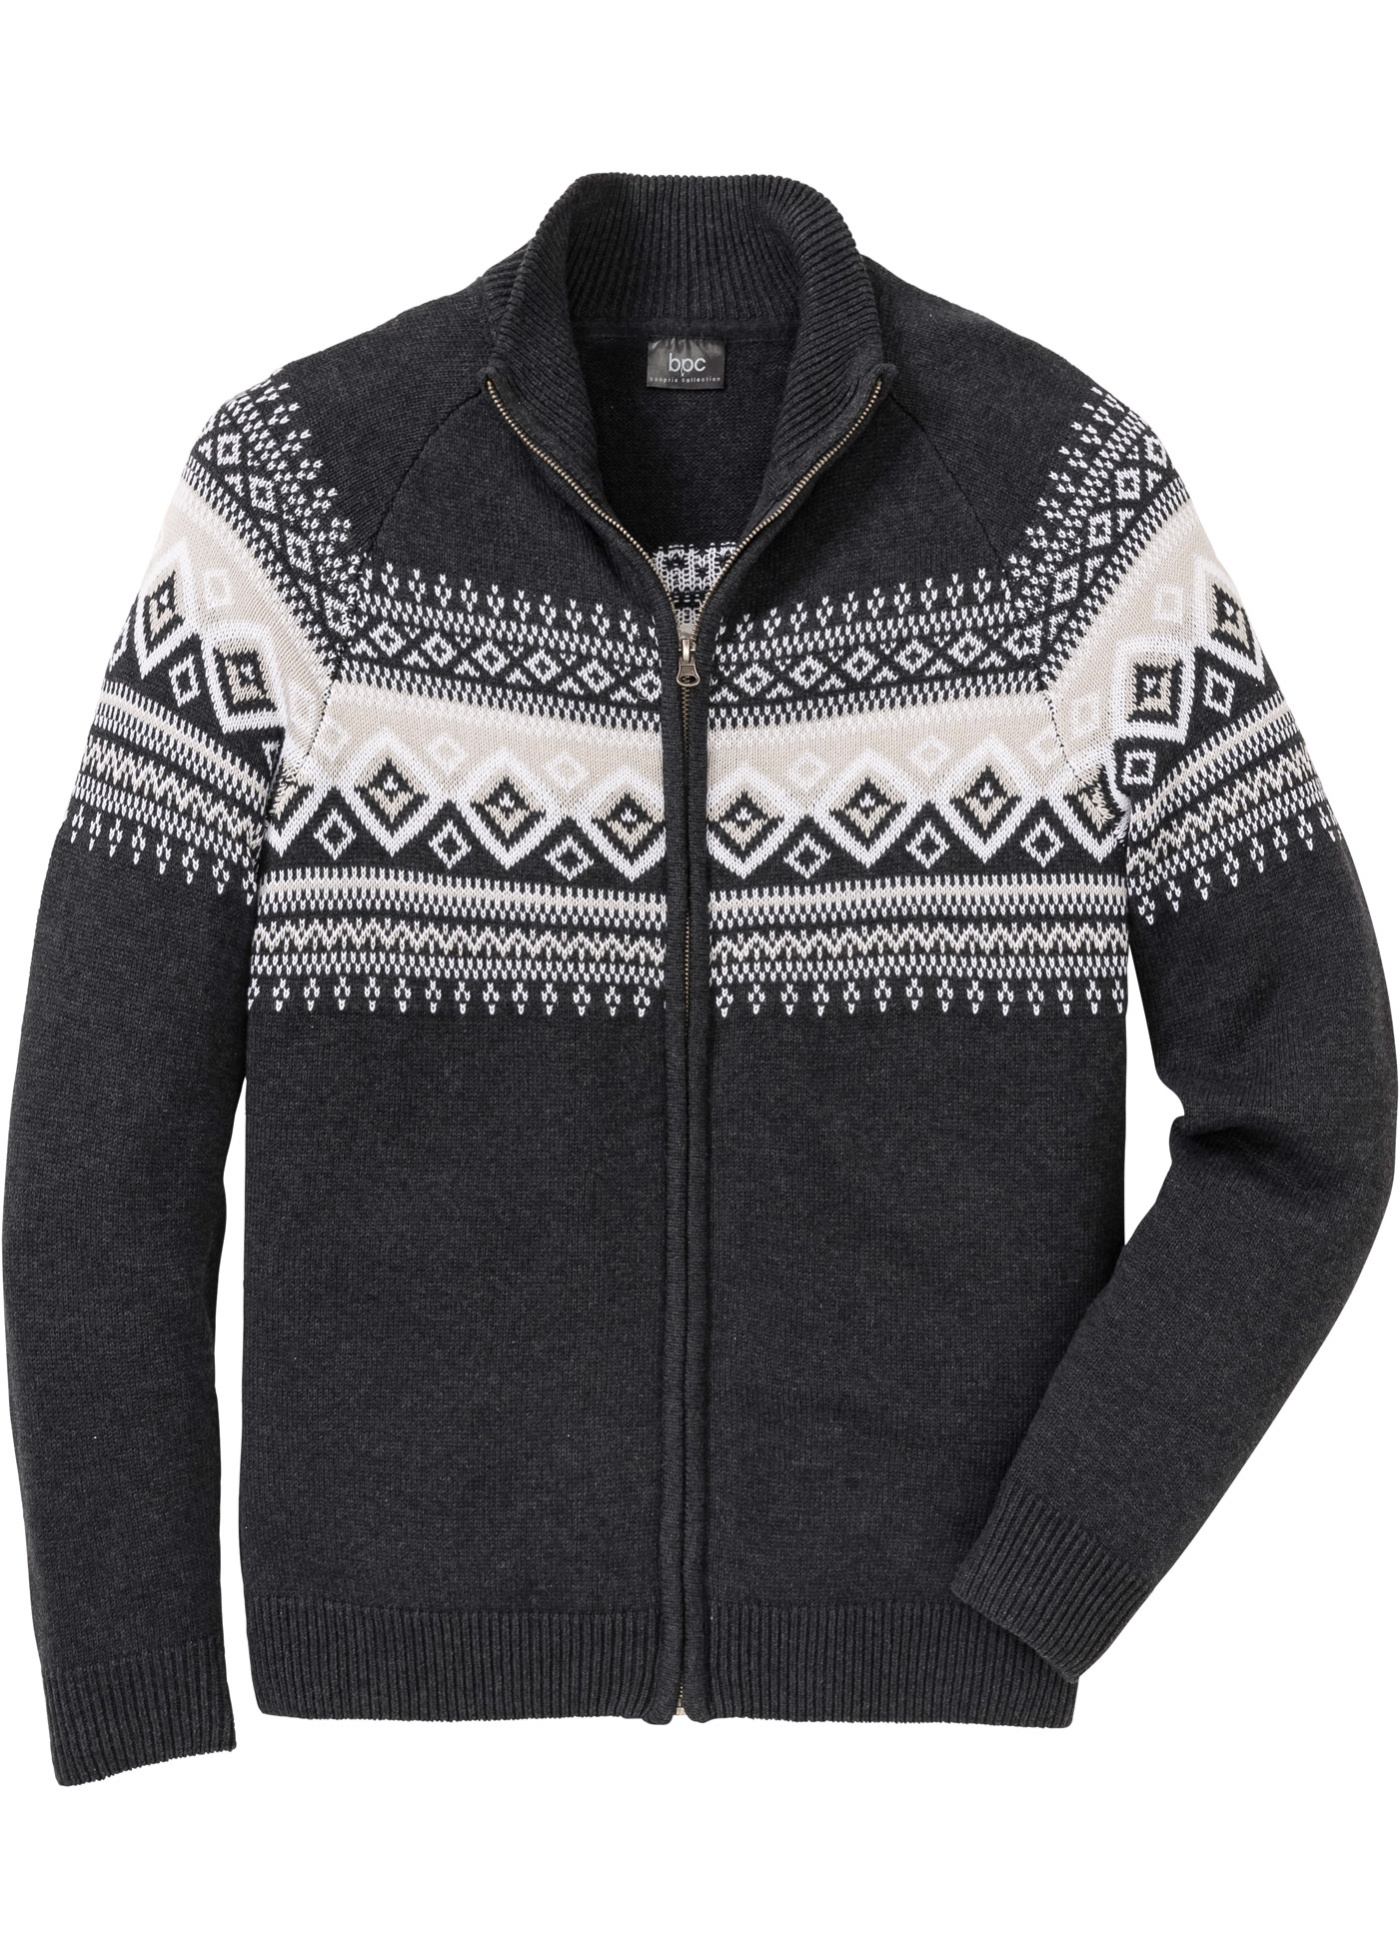 Pletený sveter s nórskym vzorom